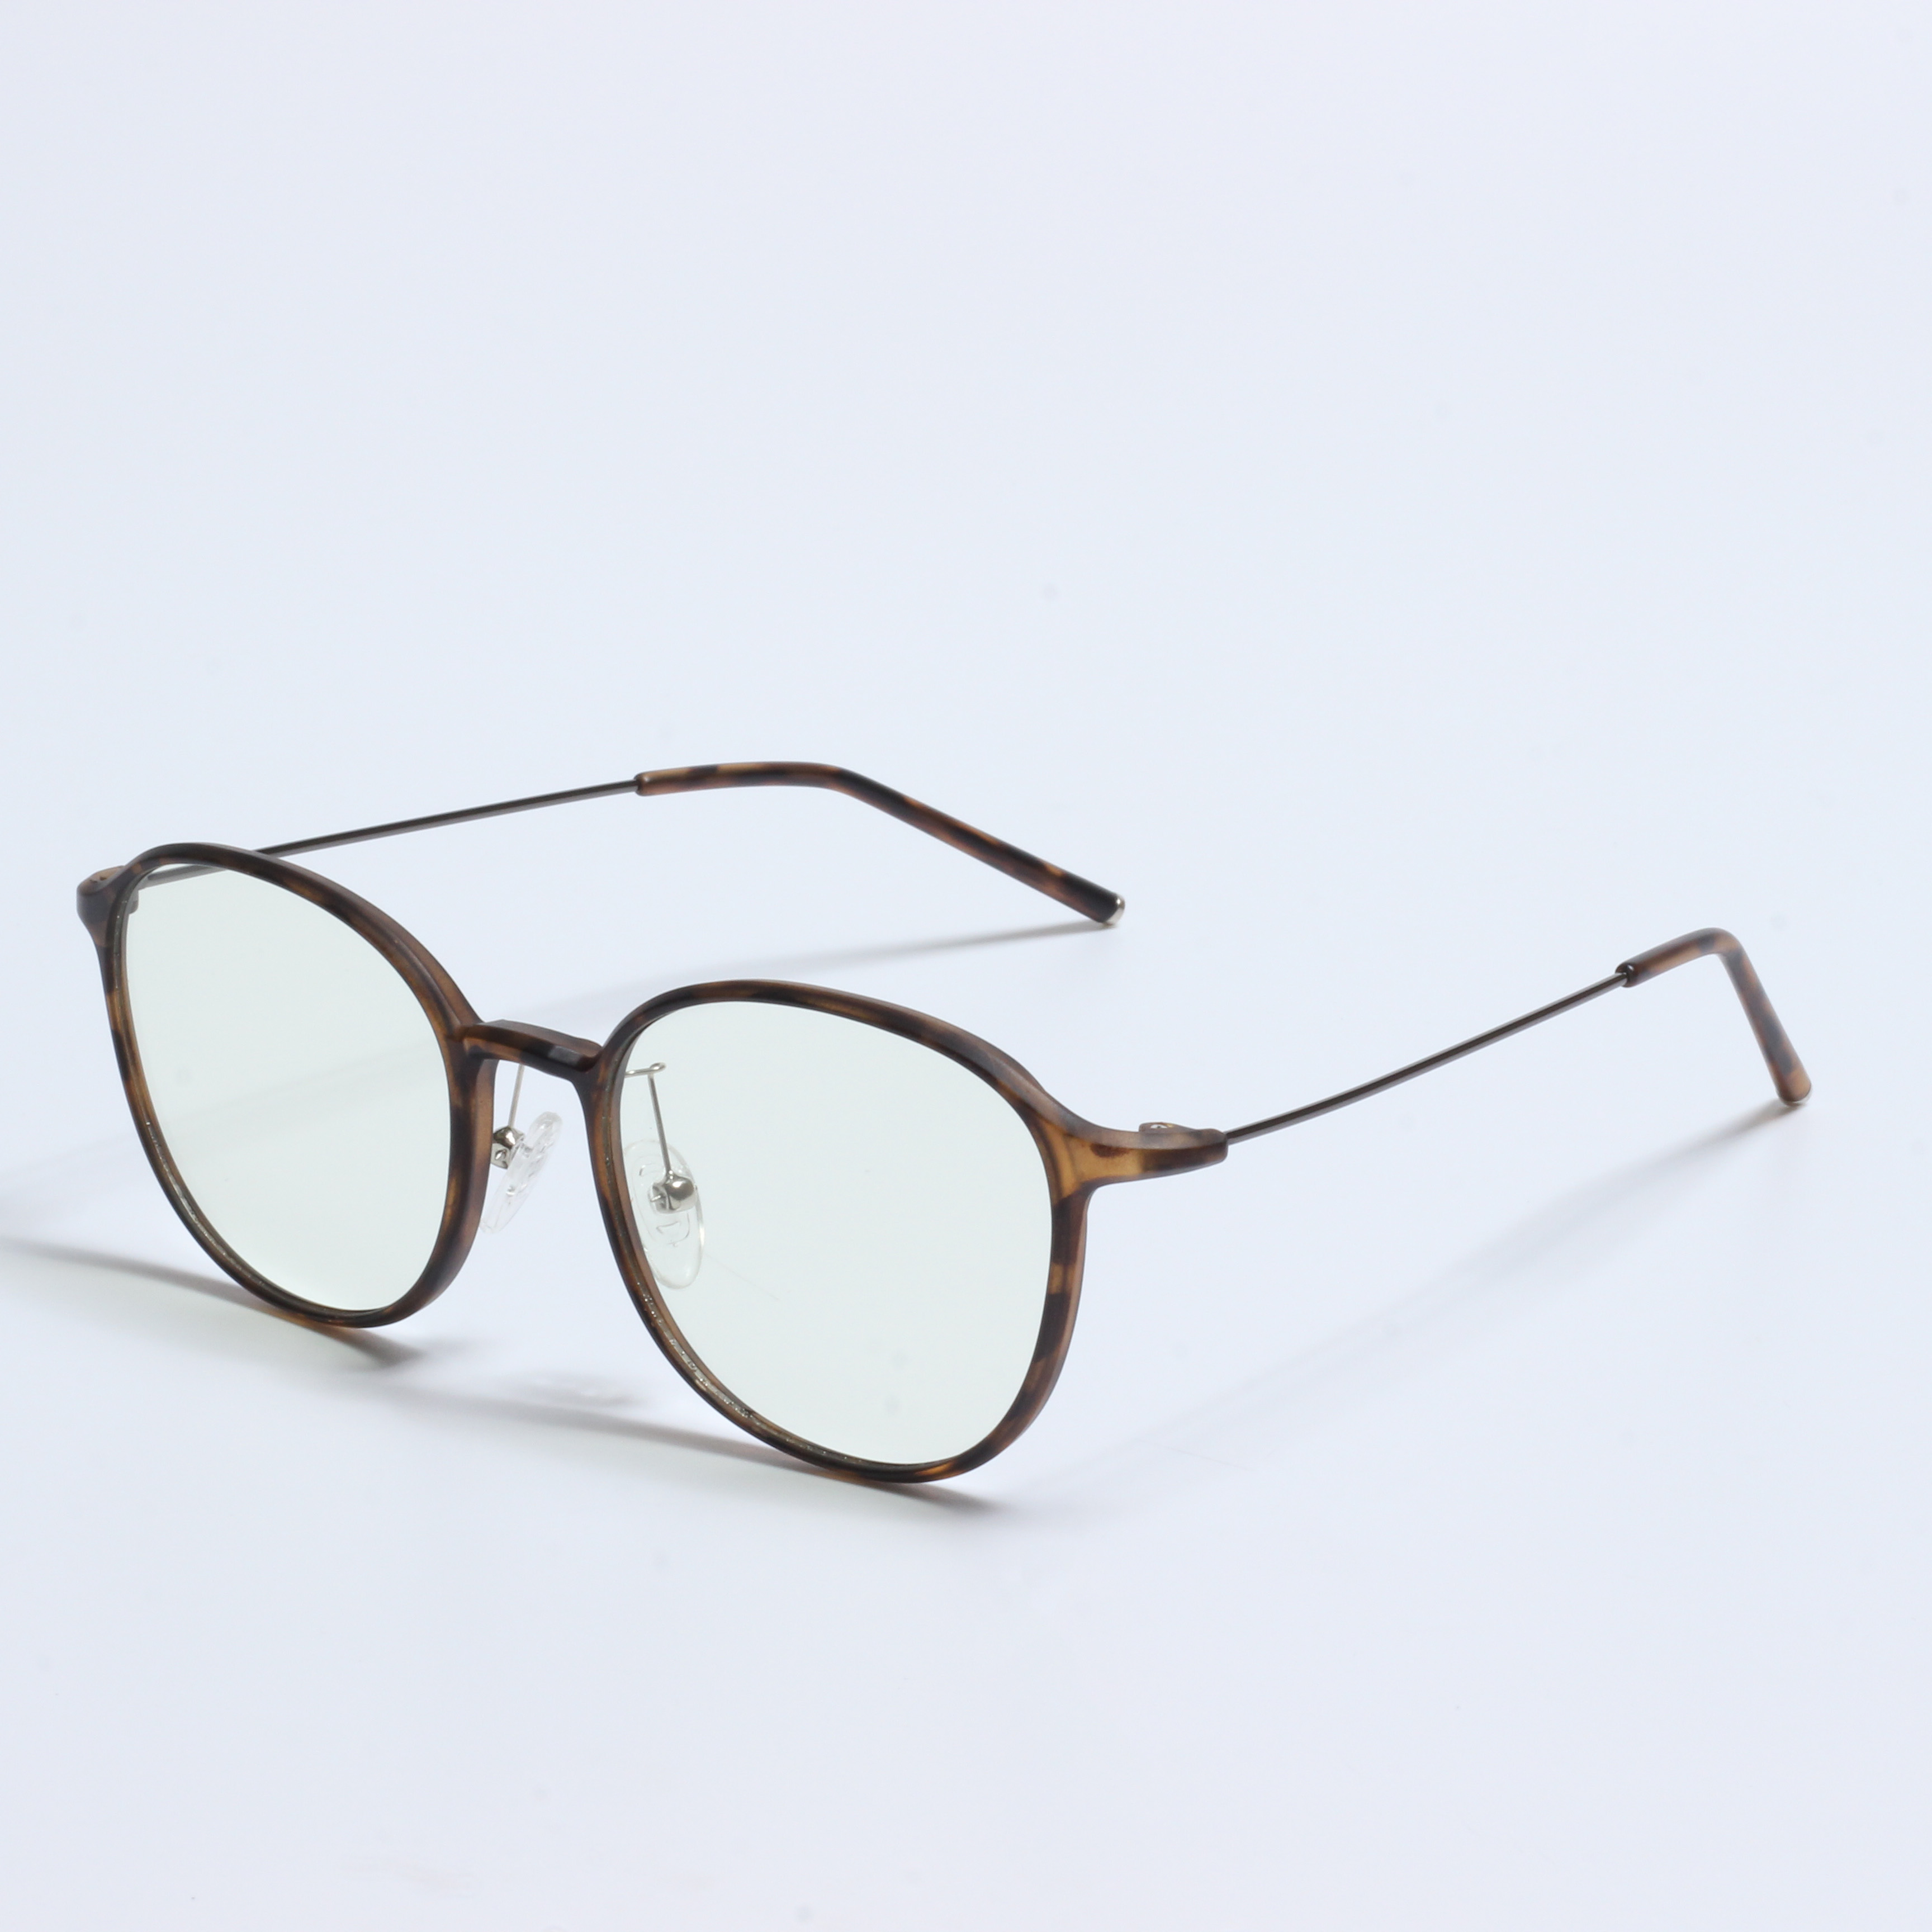 Tr90 optikai szemüvegek nagykereskedelme (8)